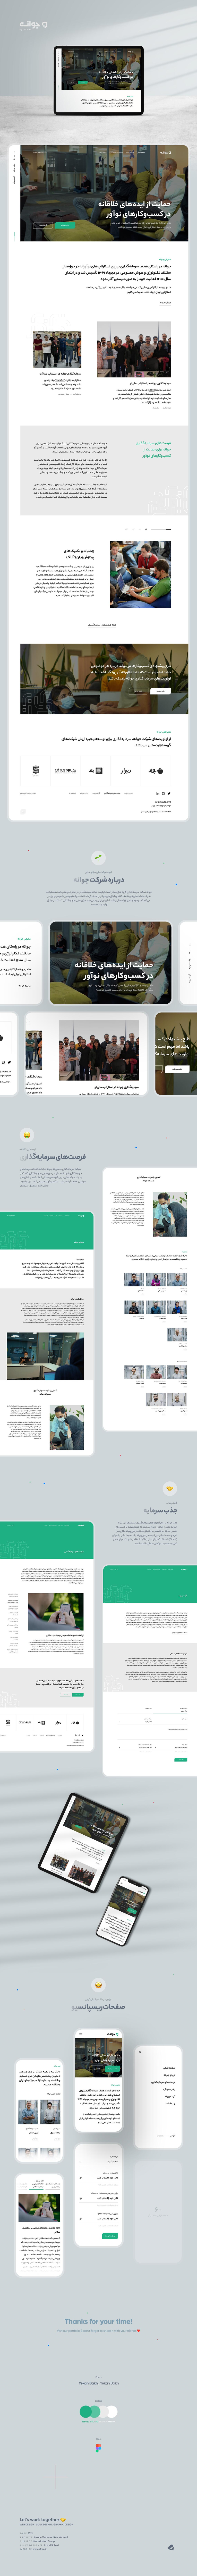  طراحی گرافیک وب، طراحی رابط کاربری و تجربه کاربری نسخه جدید وب سایت جوانه به زبان فارسی